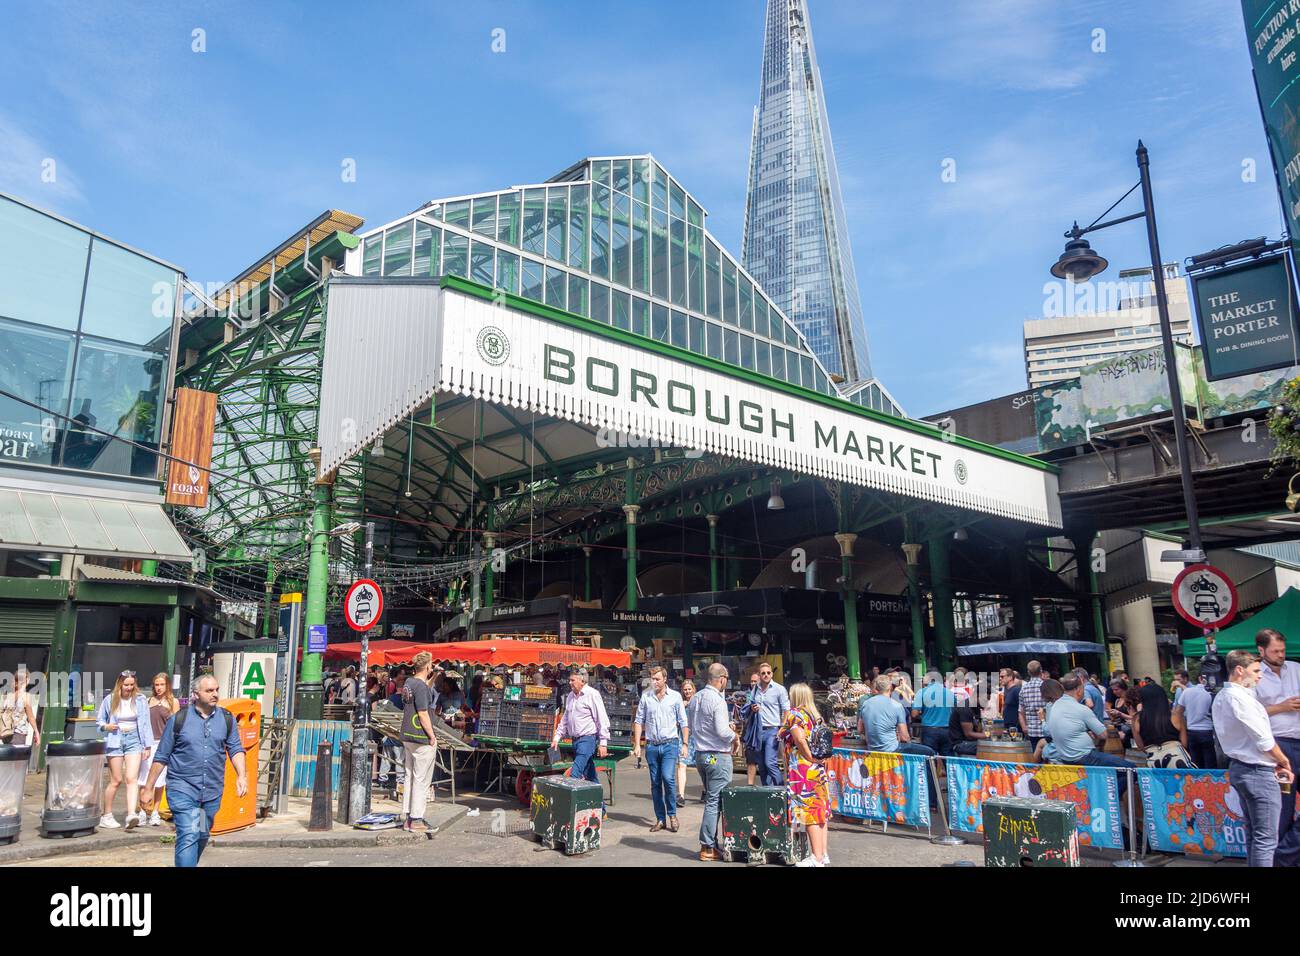 Entrance to Borough Market, Middle Street, Southwark, Royal Borough of Southwark, Greater London, England, United Kingdom Stock Photo